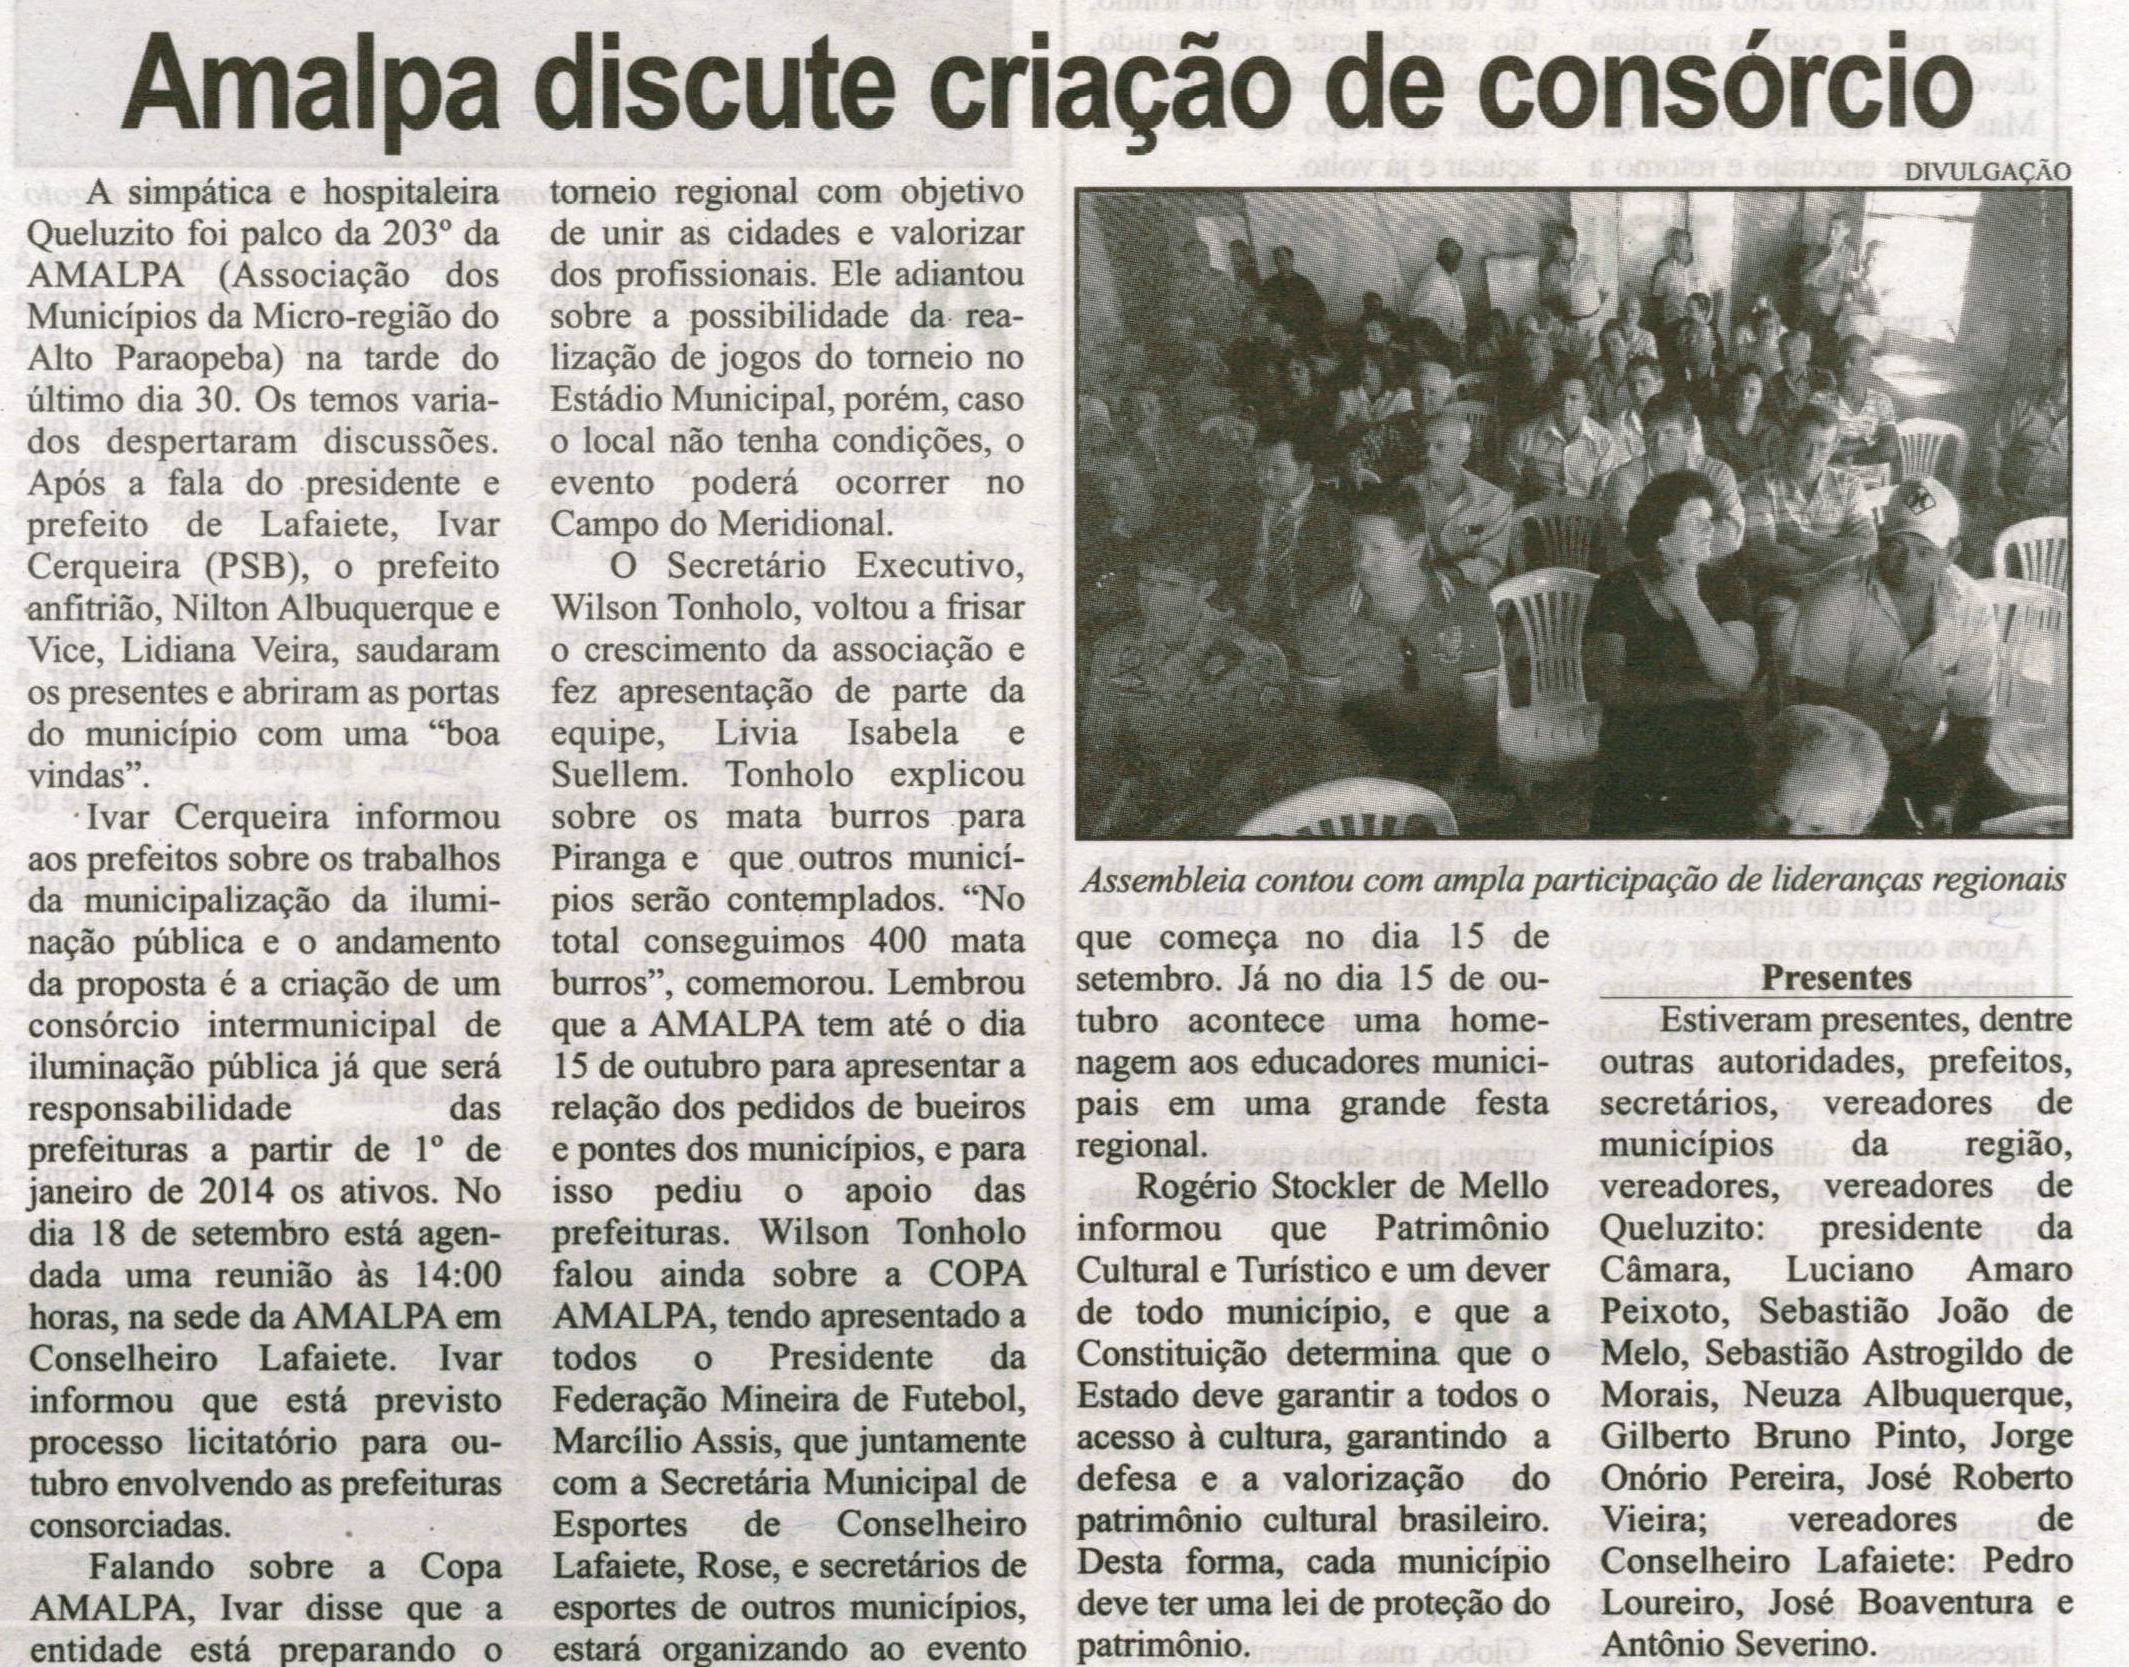 Amalpa discute criação de consórcio. Correio de Minas, Conselheiro Lafaiete, 07 set. 2013, p. 03.